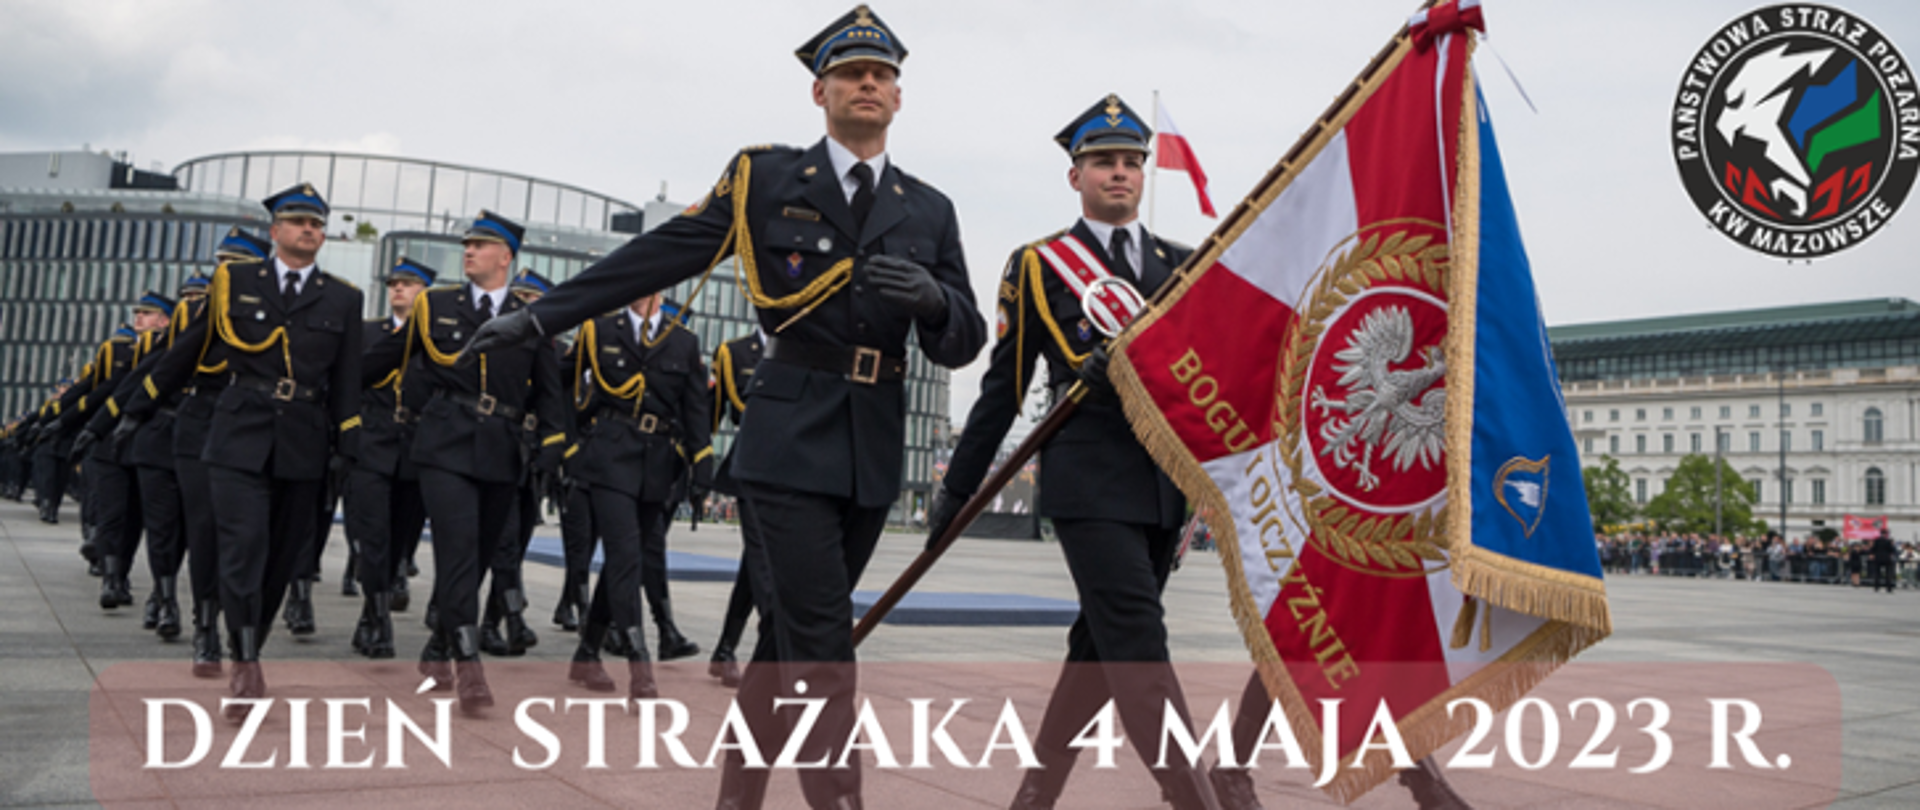 Zdjęcie wykonane na w Warszawie na Placu Marszałka Józefa Piłsudskiego. Na zdjęciu widać uroczystą defiladę pododdziałów Państwowej Straży Pożarnej z okazji obchodów Dnia Strażaka. Na pierwszym planie widać poczet sztandarowy. Poczet tworzy trzech funkcjonariuszy ubranych w mundury galowe. Środkowy z nich w rękach trzyma sztandar. Dodatkowo jego mundur przepasany jest biało – czerwoną wstęgą. Za pocztem sztandarowym maszerują w czwórkach pozostali funkcjonariusze również ubrani w mundury galowe. W oddali widać zabudowania okalające plac, na którym odbywa się uroczystość. 